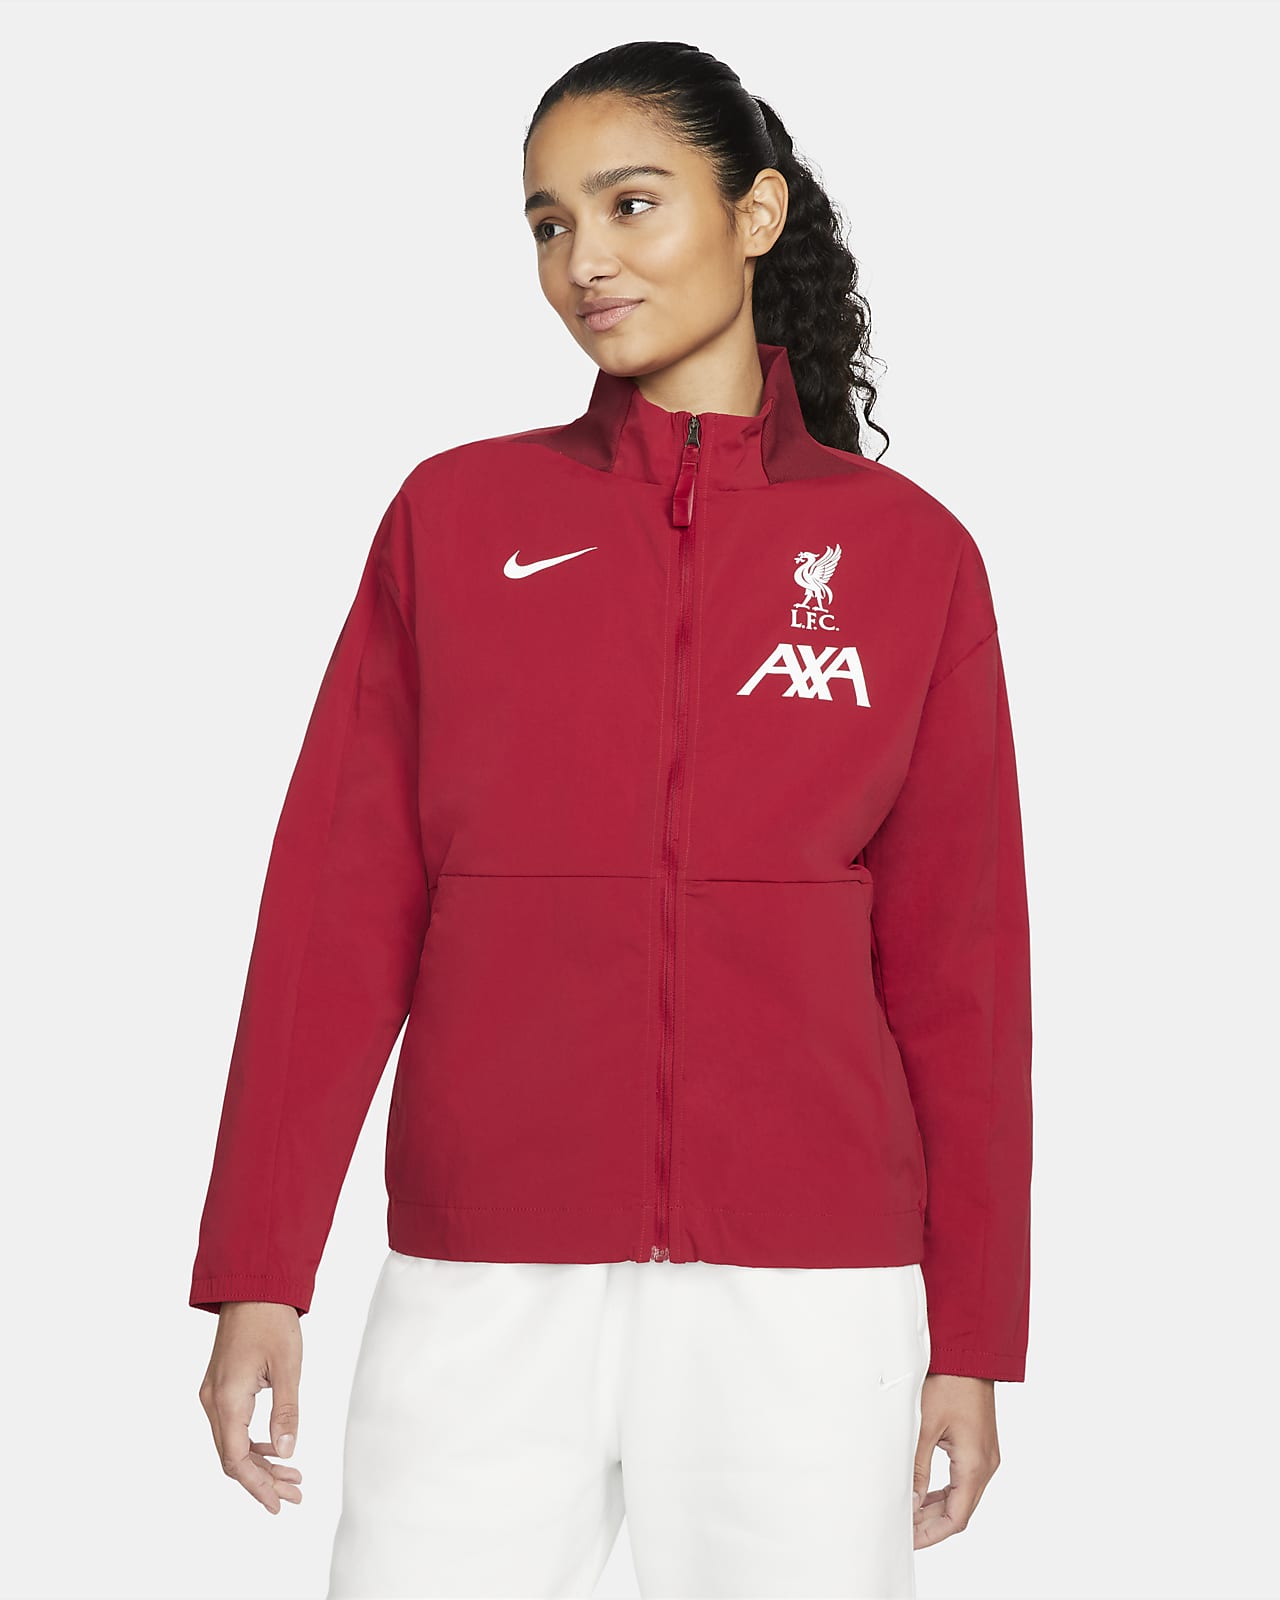 Liverpool F.C. Women's Nike Dri-FIT Football Jacket